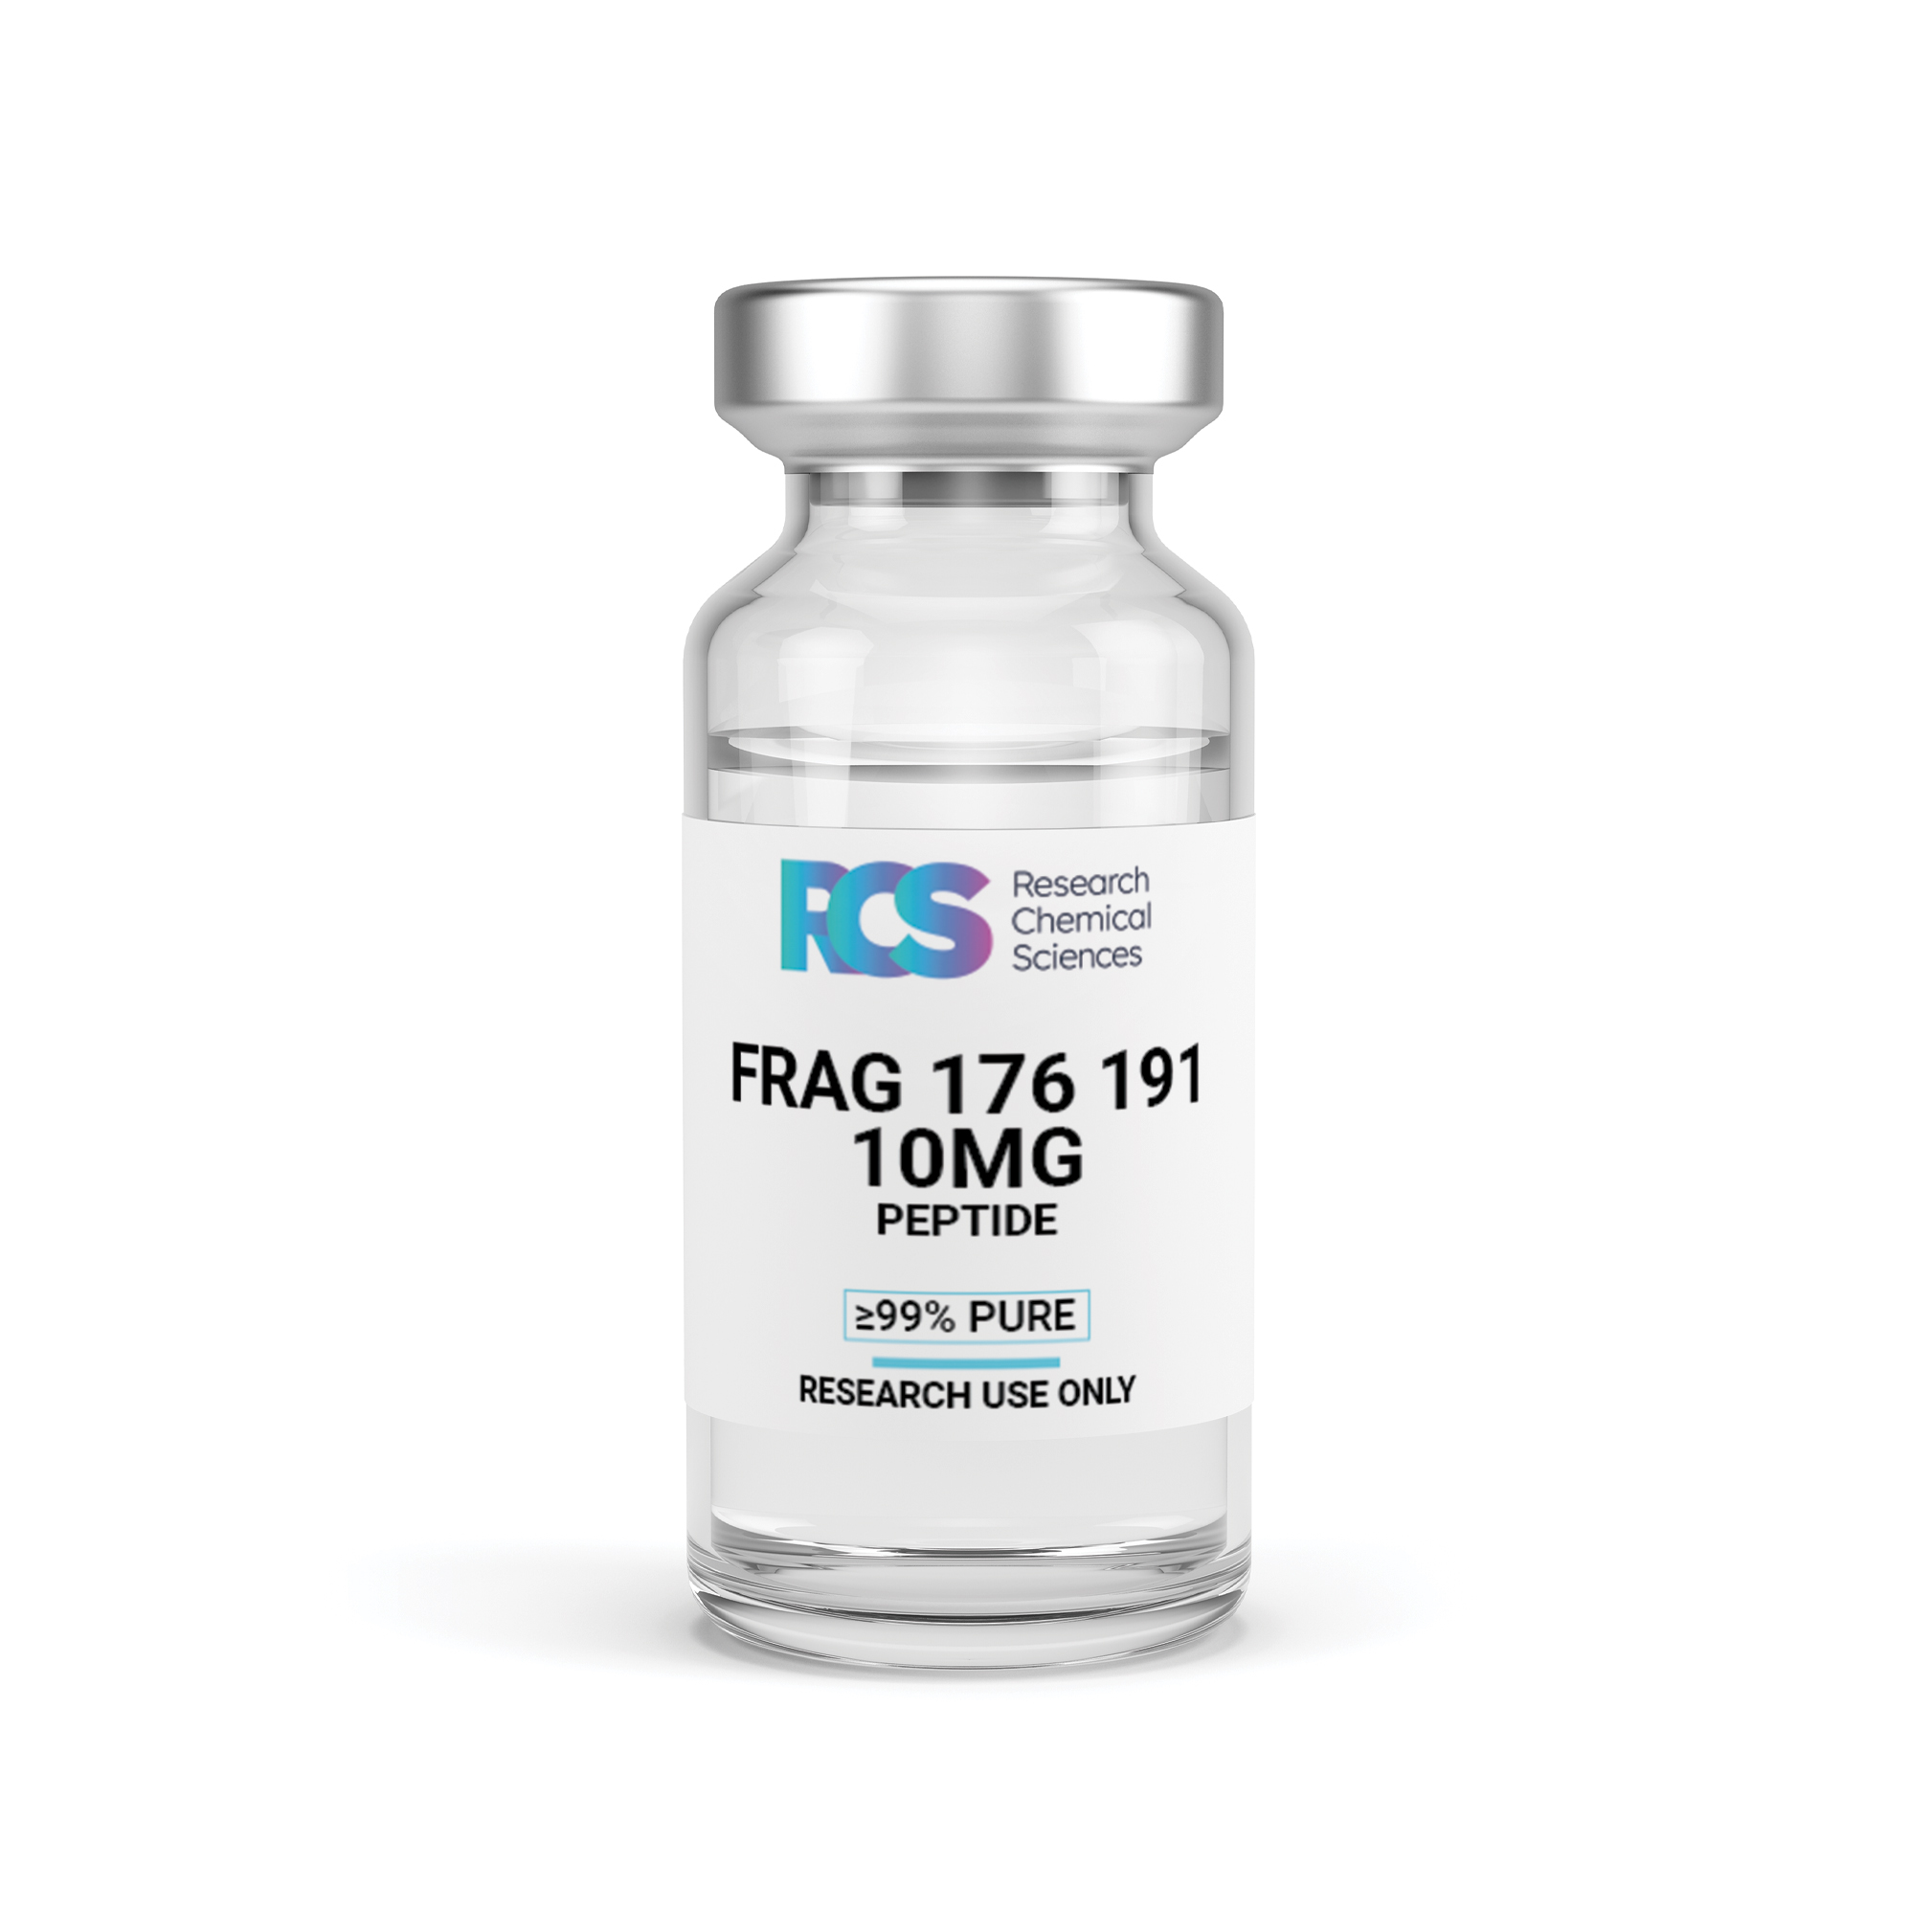 RCS-Frag-176-191-Peptide-10MG-Side-1